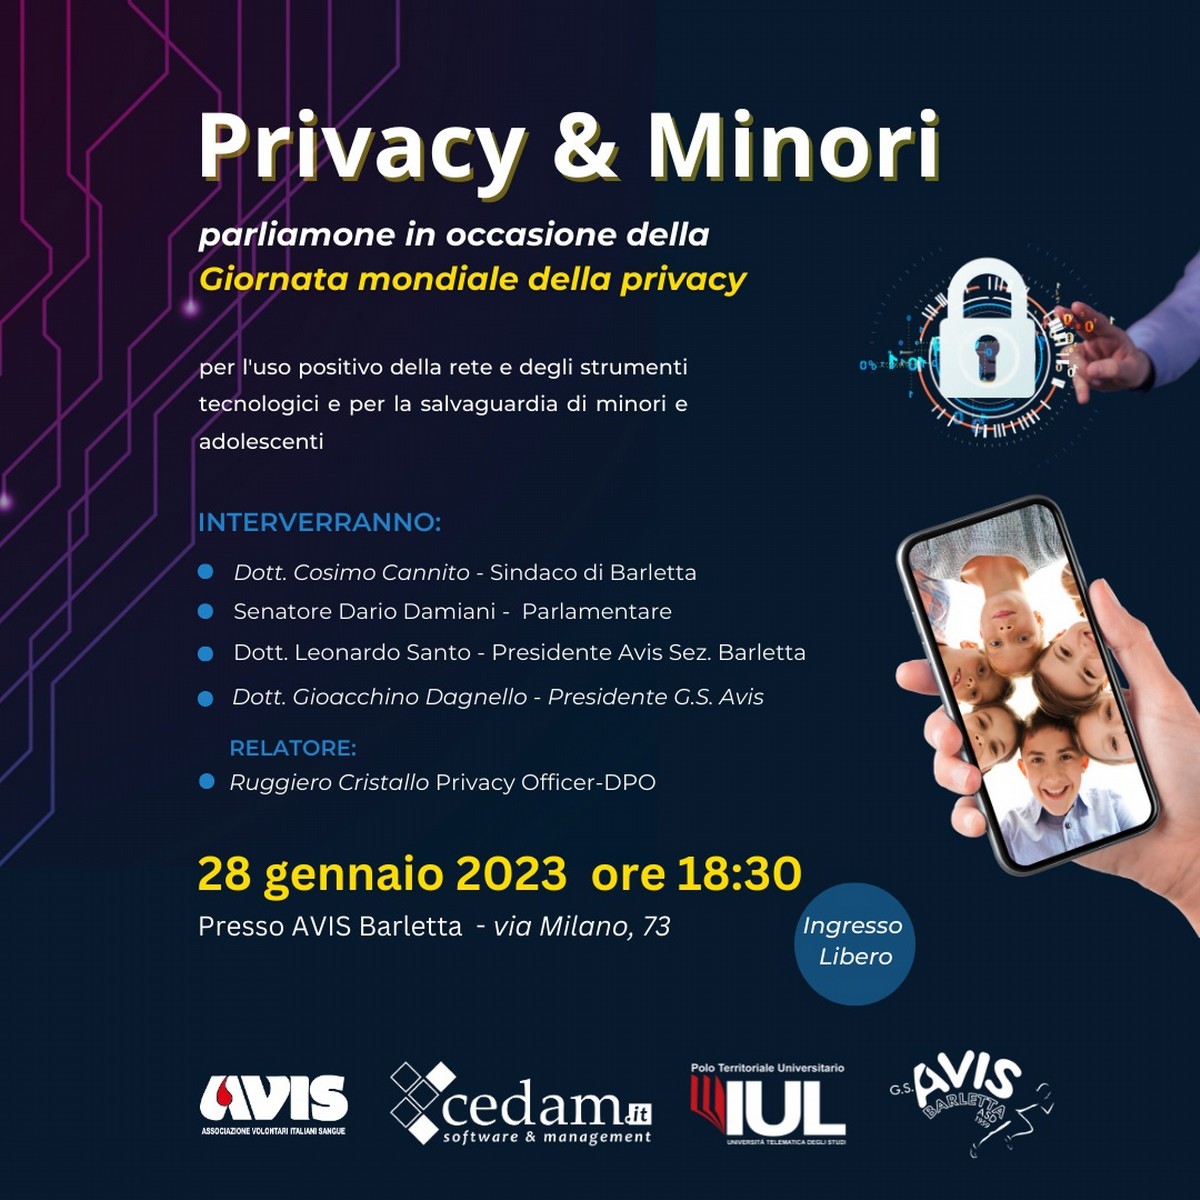 “Privacy & Minori” in occasione della Giornata Mondiale della Privacy